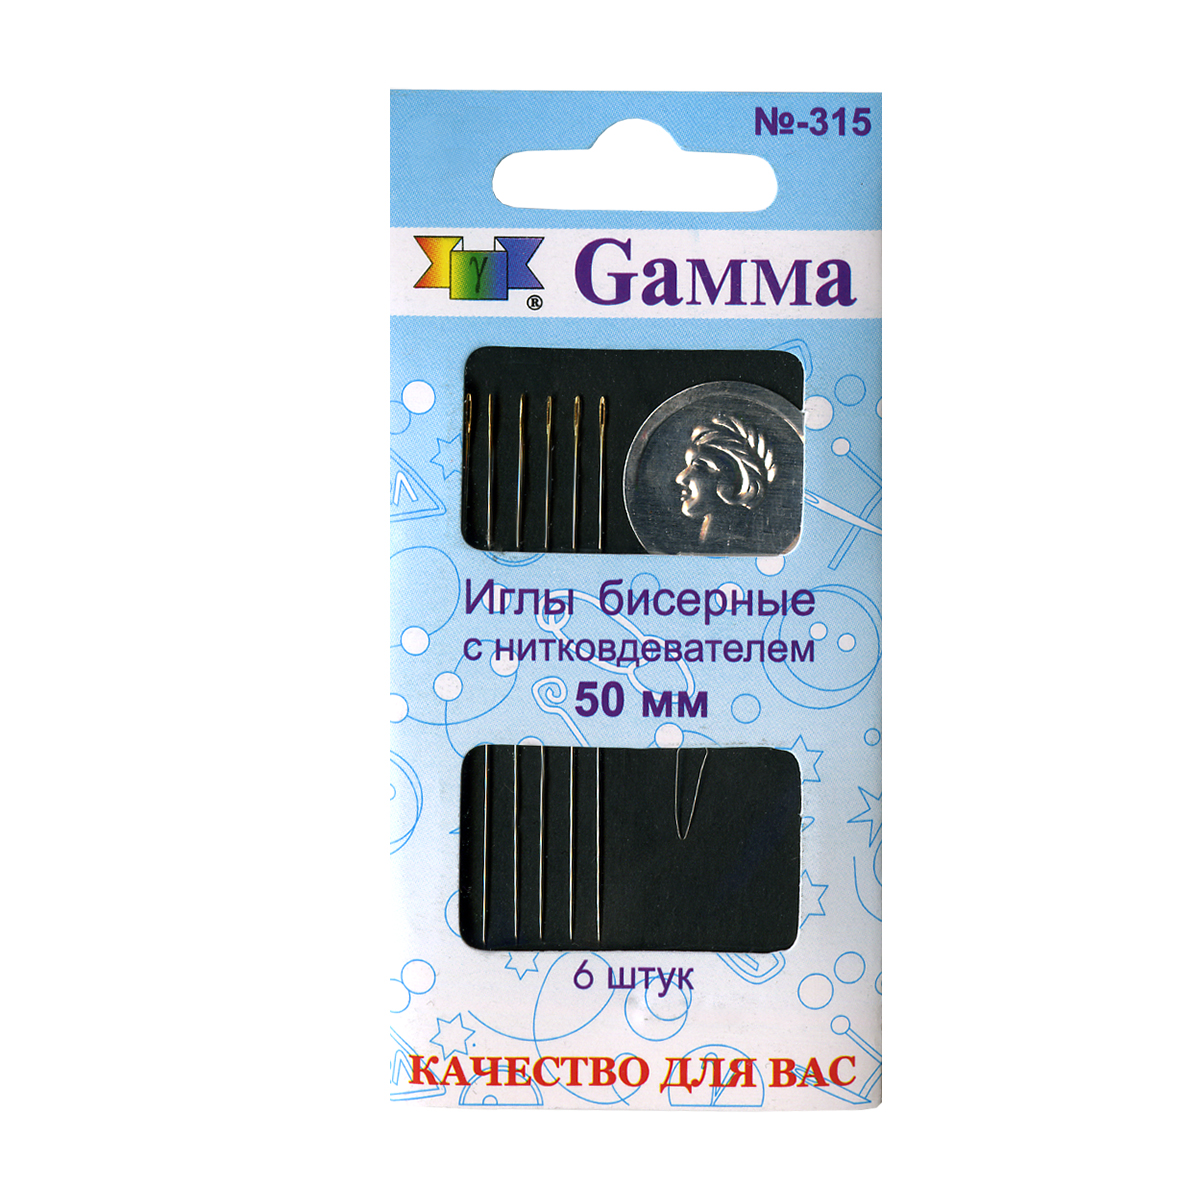 Gamma N-315   50  d 0.4  6   